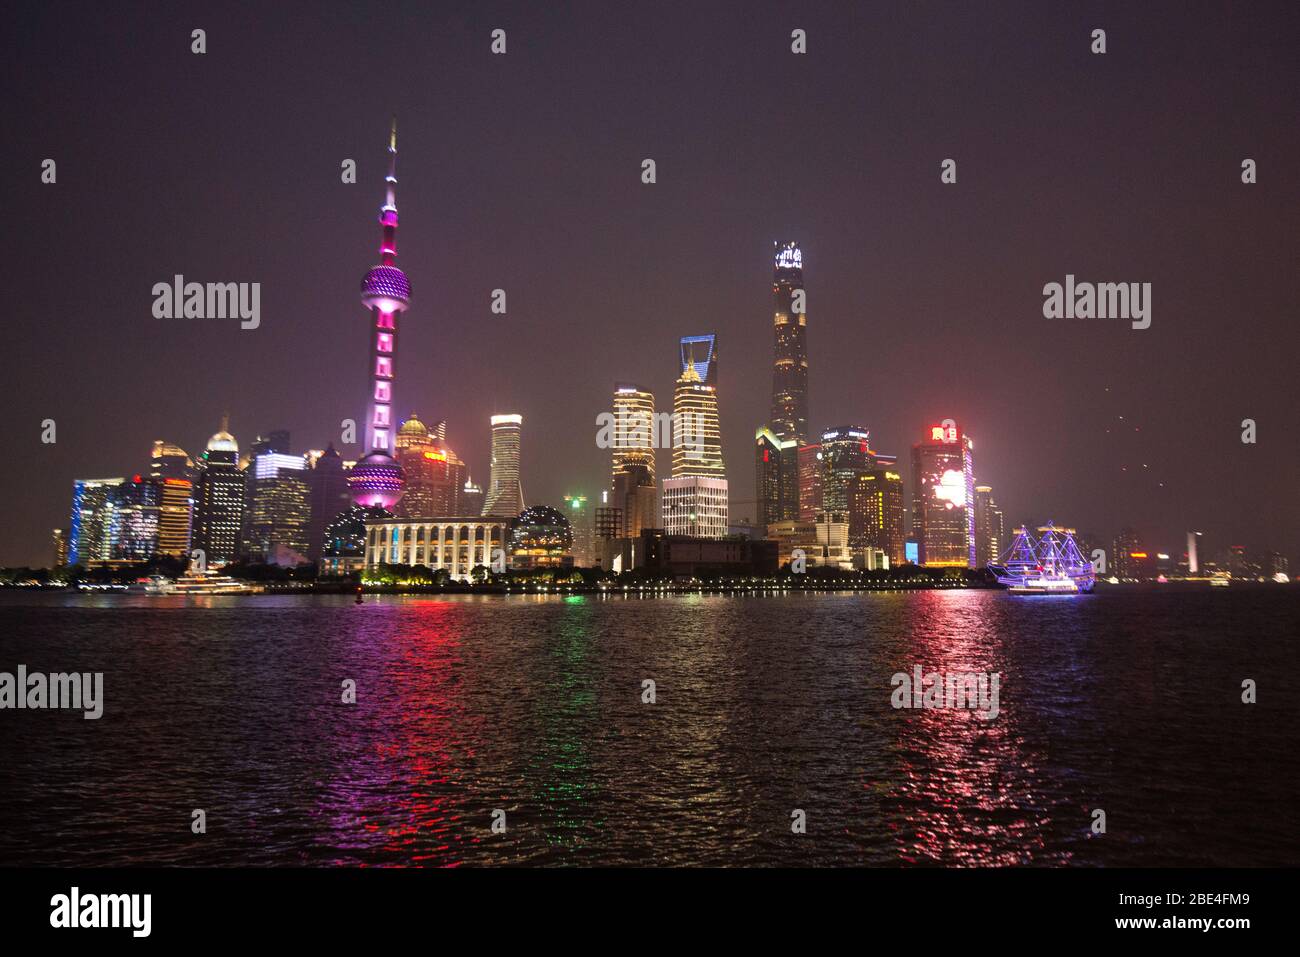 Lo skyline di Shanghai Pudong si affaccia sul fiume Huangpu, vista dal Bund di notte. Cina Foto Stock